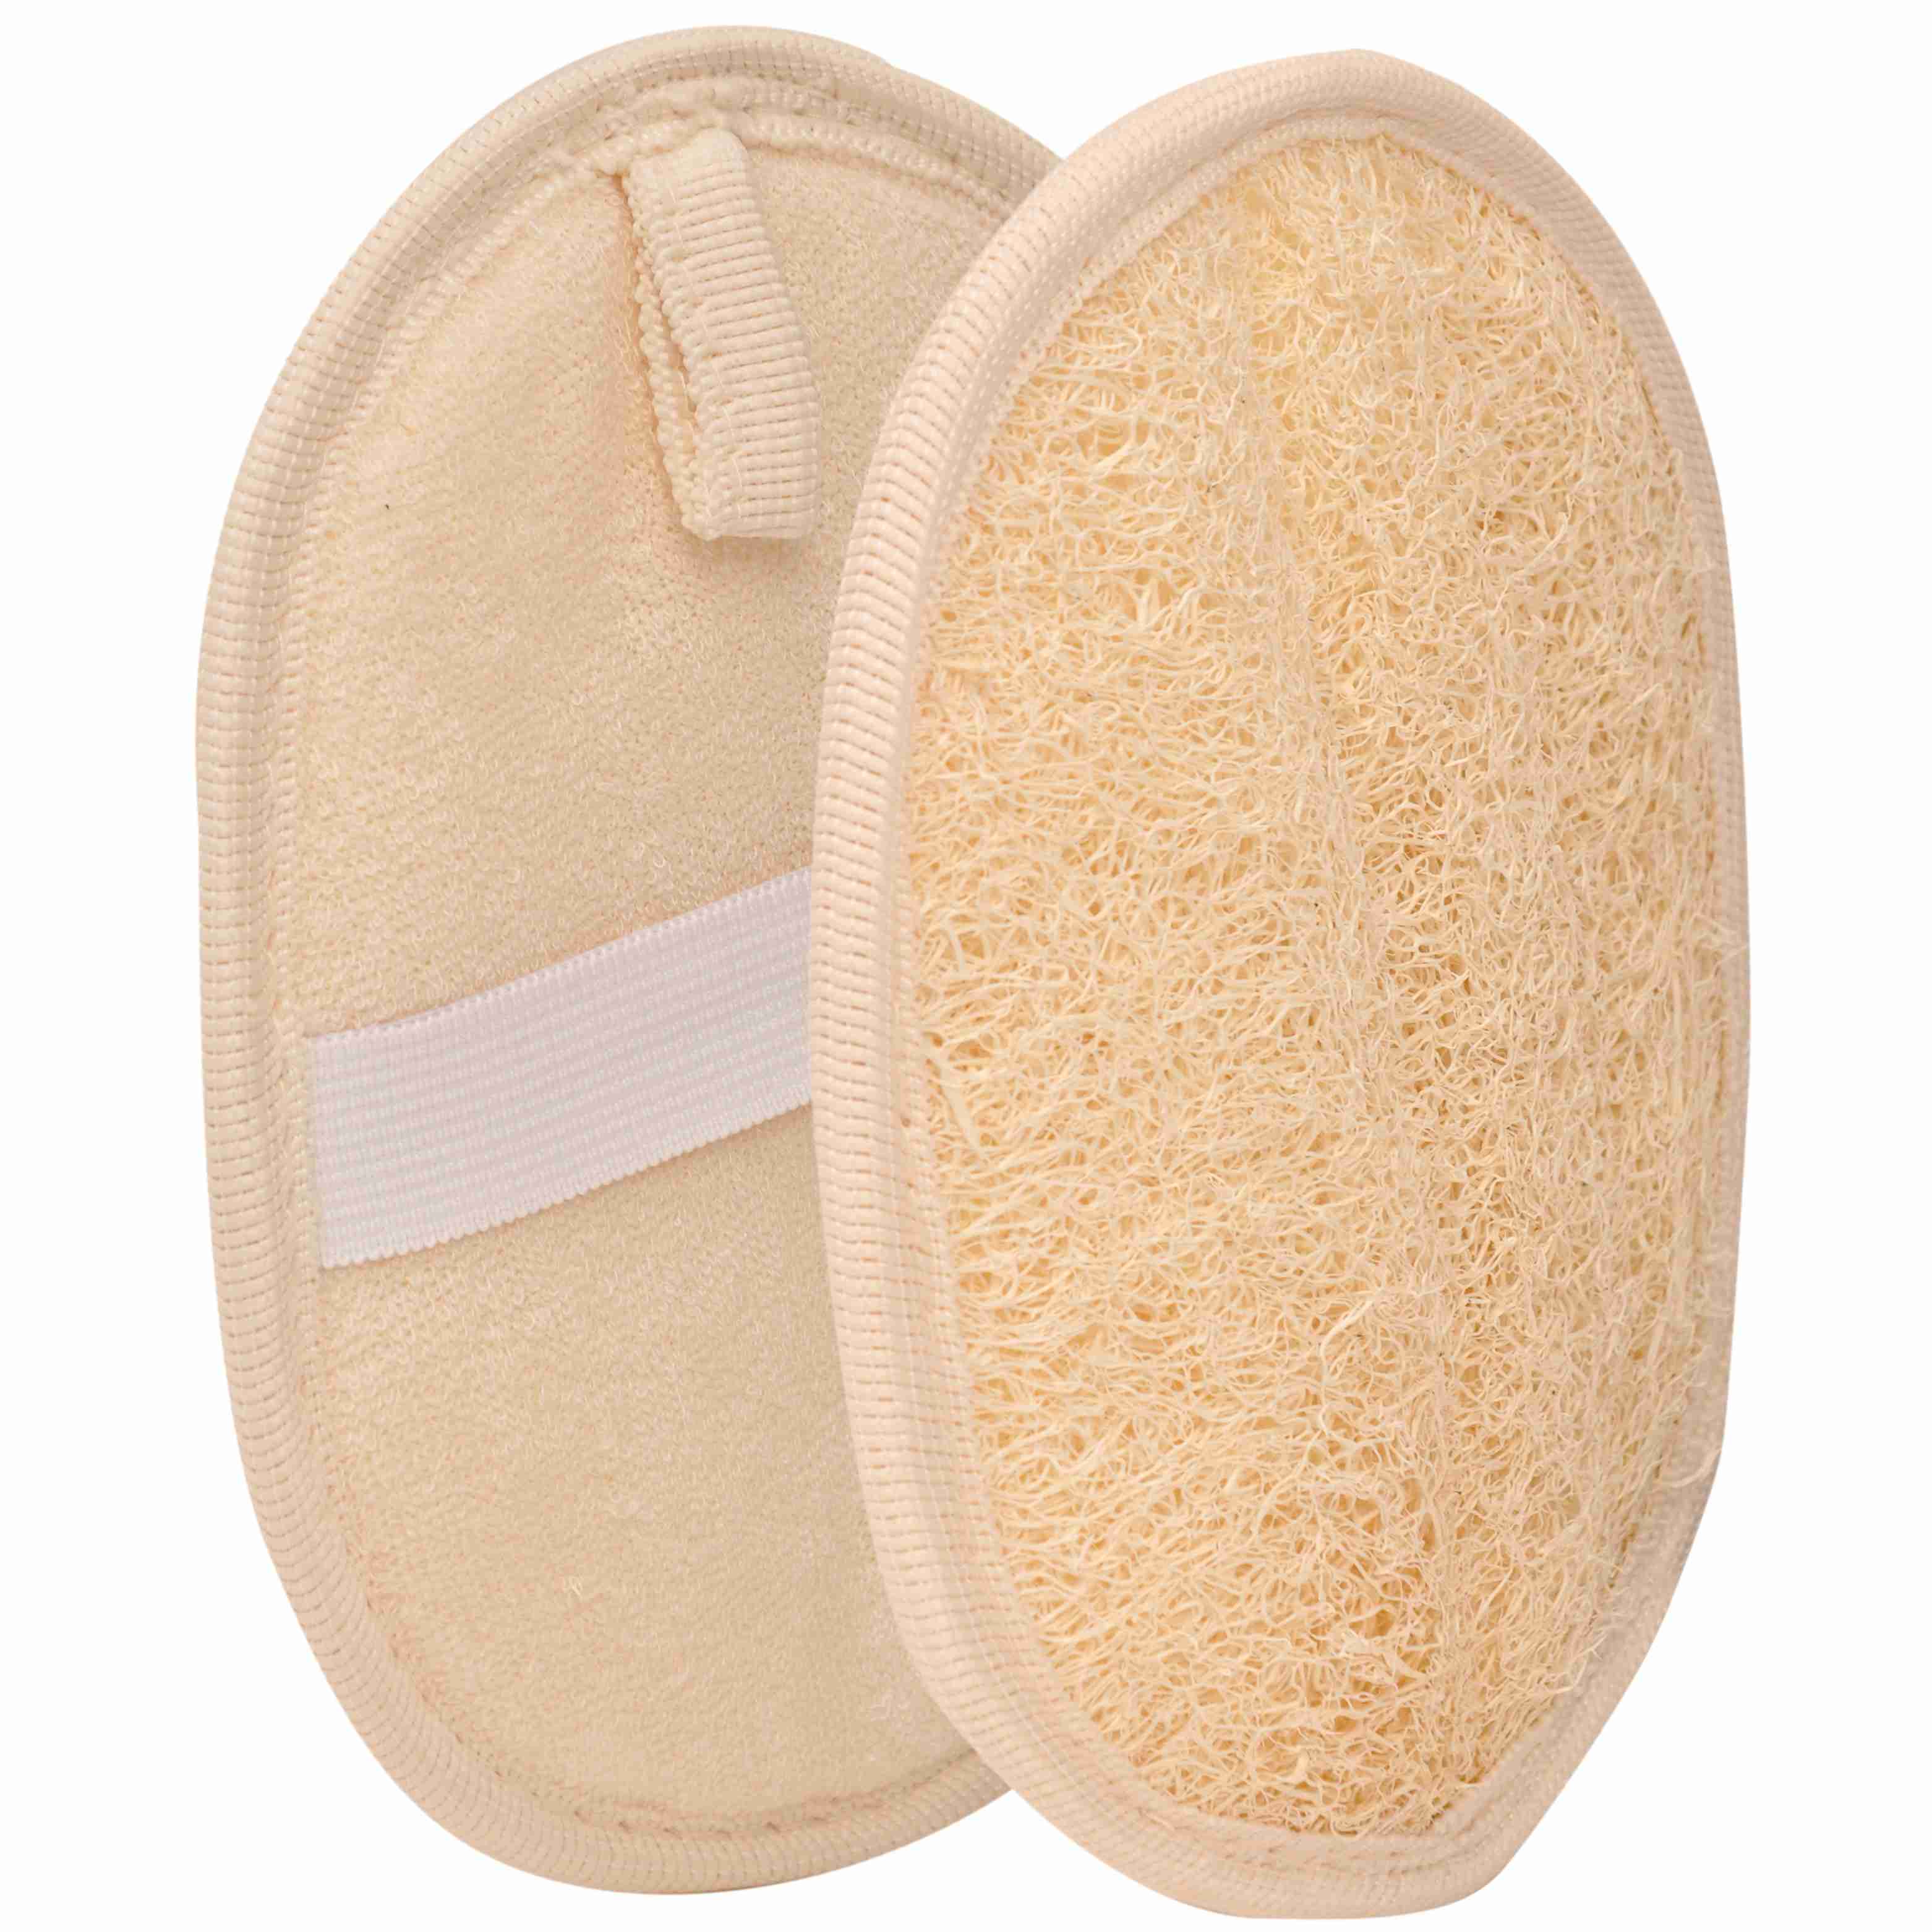 body-scrubber--loofah-sponge-exfoliate-skin-care with cash back rebate